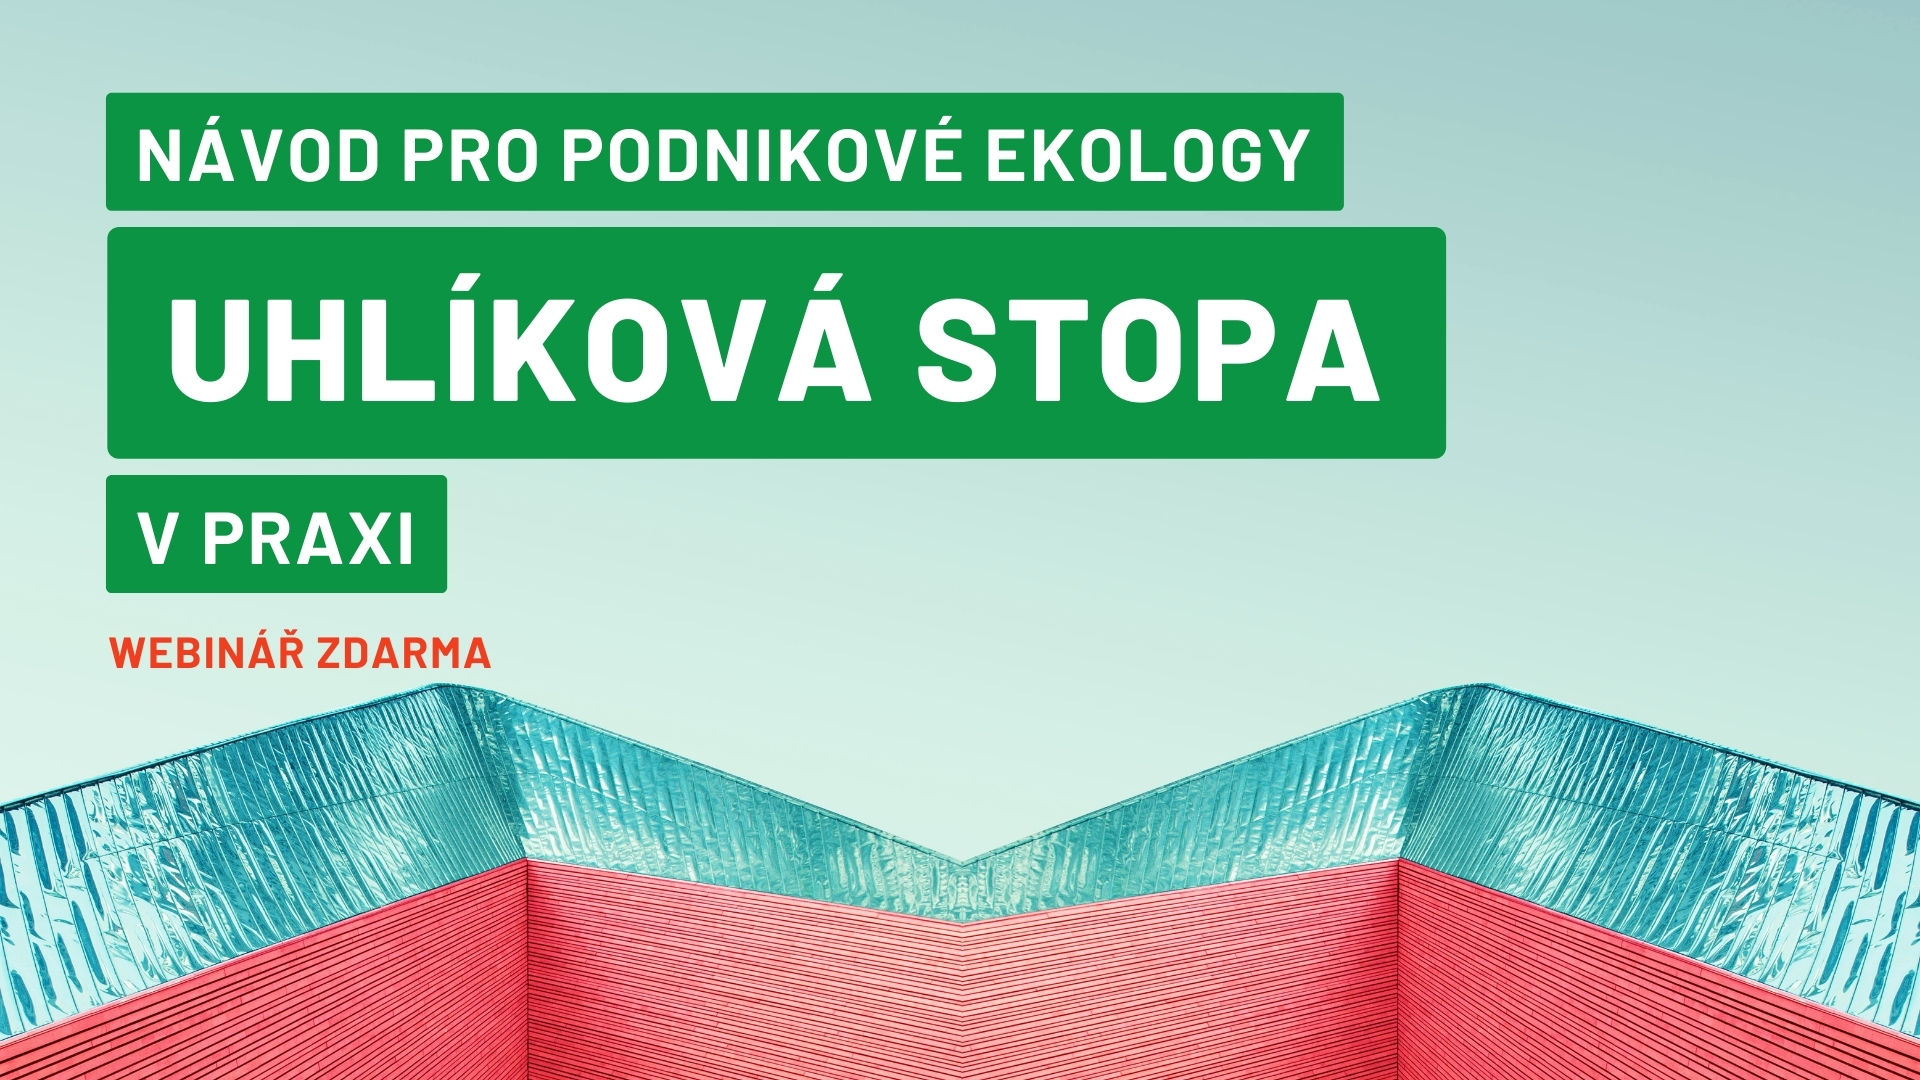 Navod_pro_podnikove_ekology_uhlikova_stopa_v_praxi.jpg